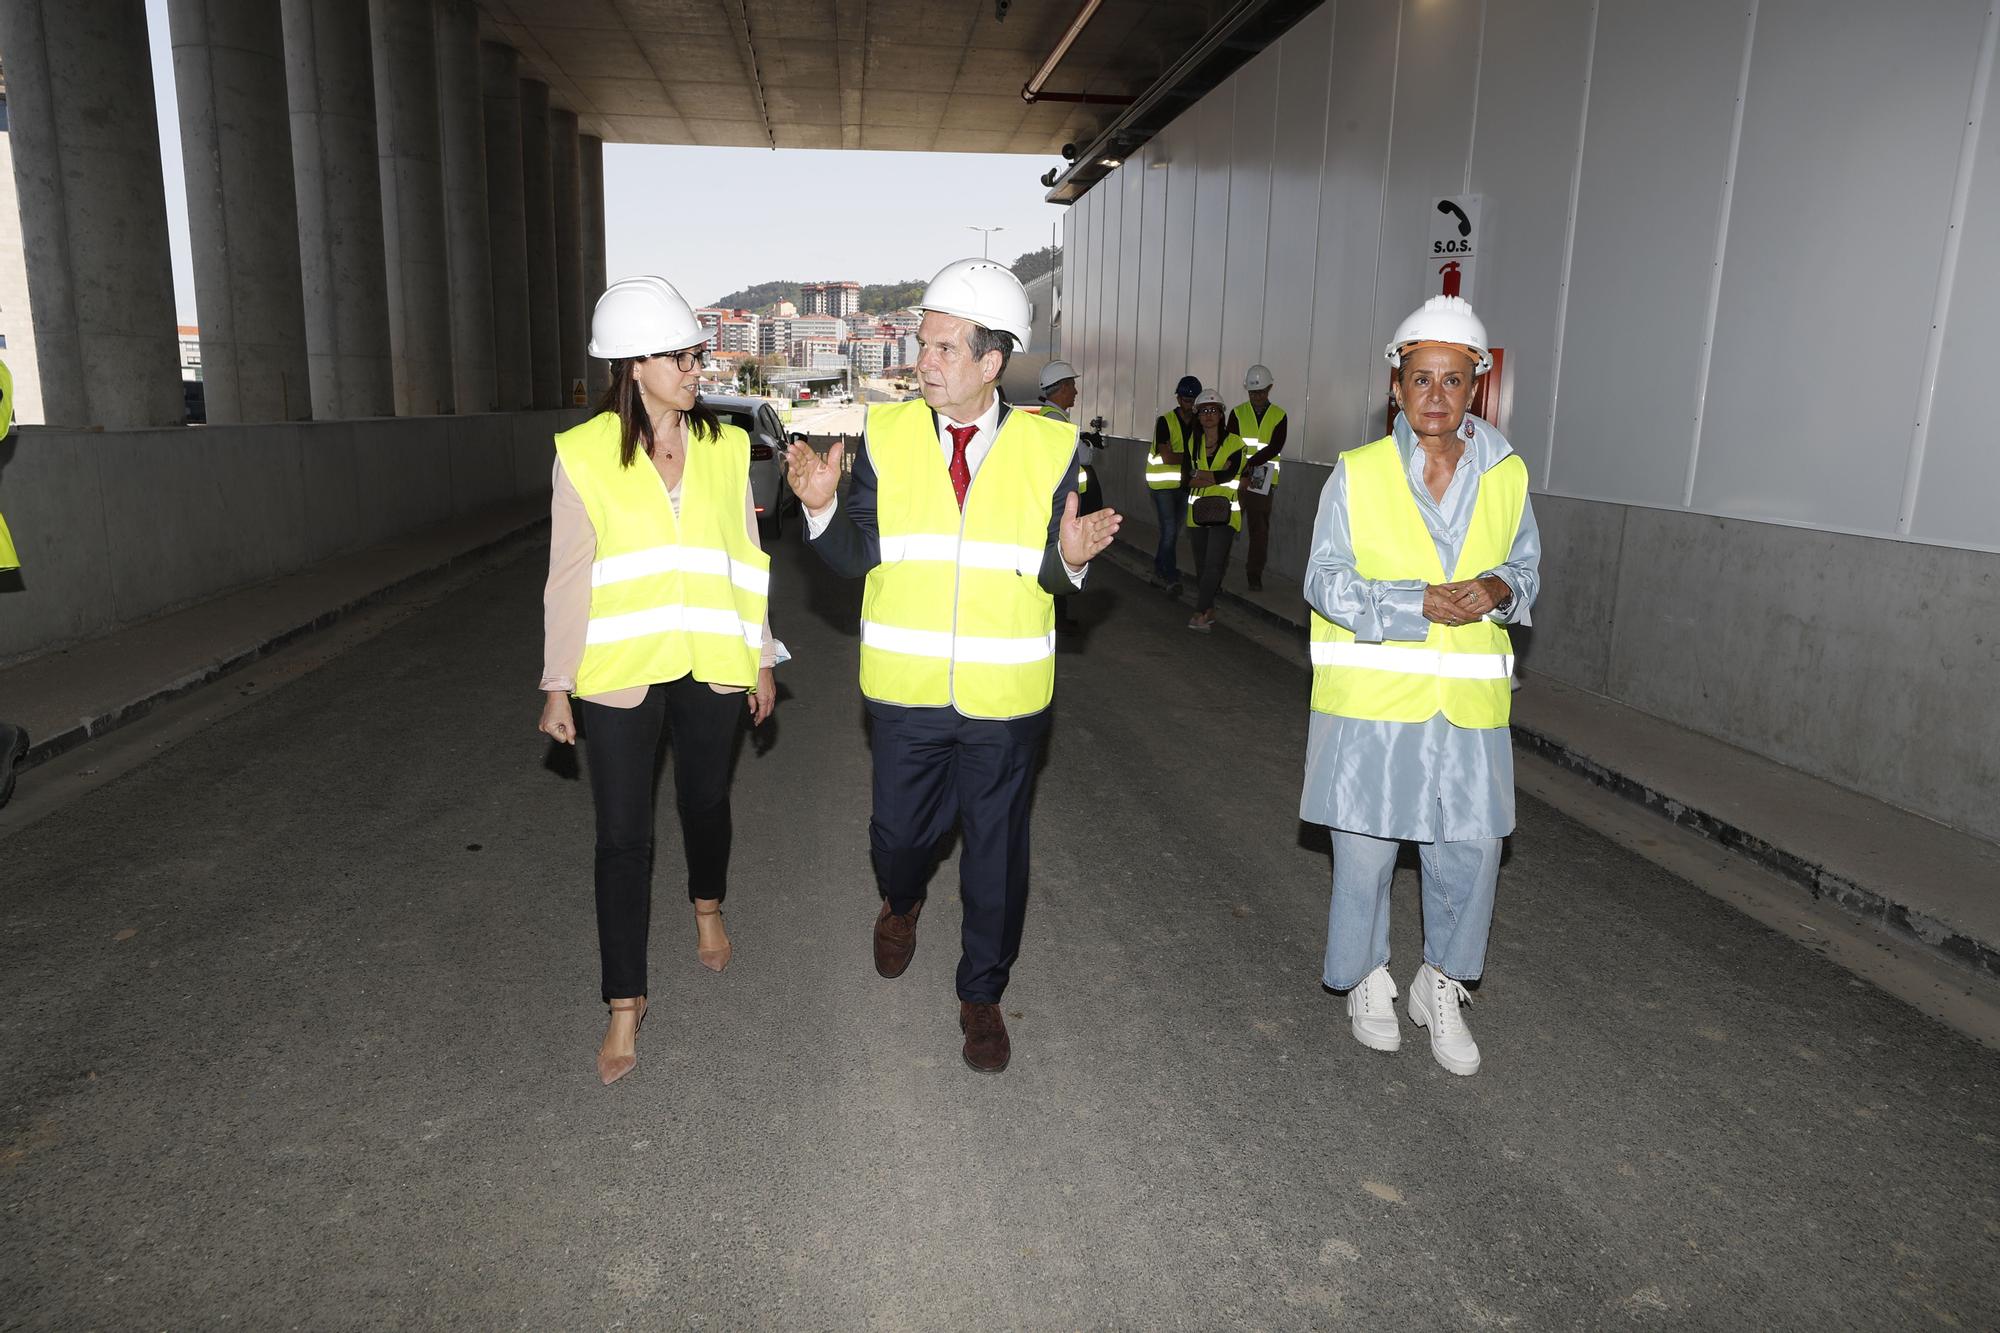 El túnel de Lepanto para conectar el centro con la autopista estará operativo en un mes